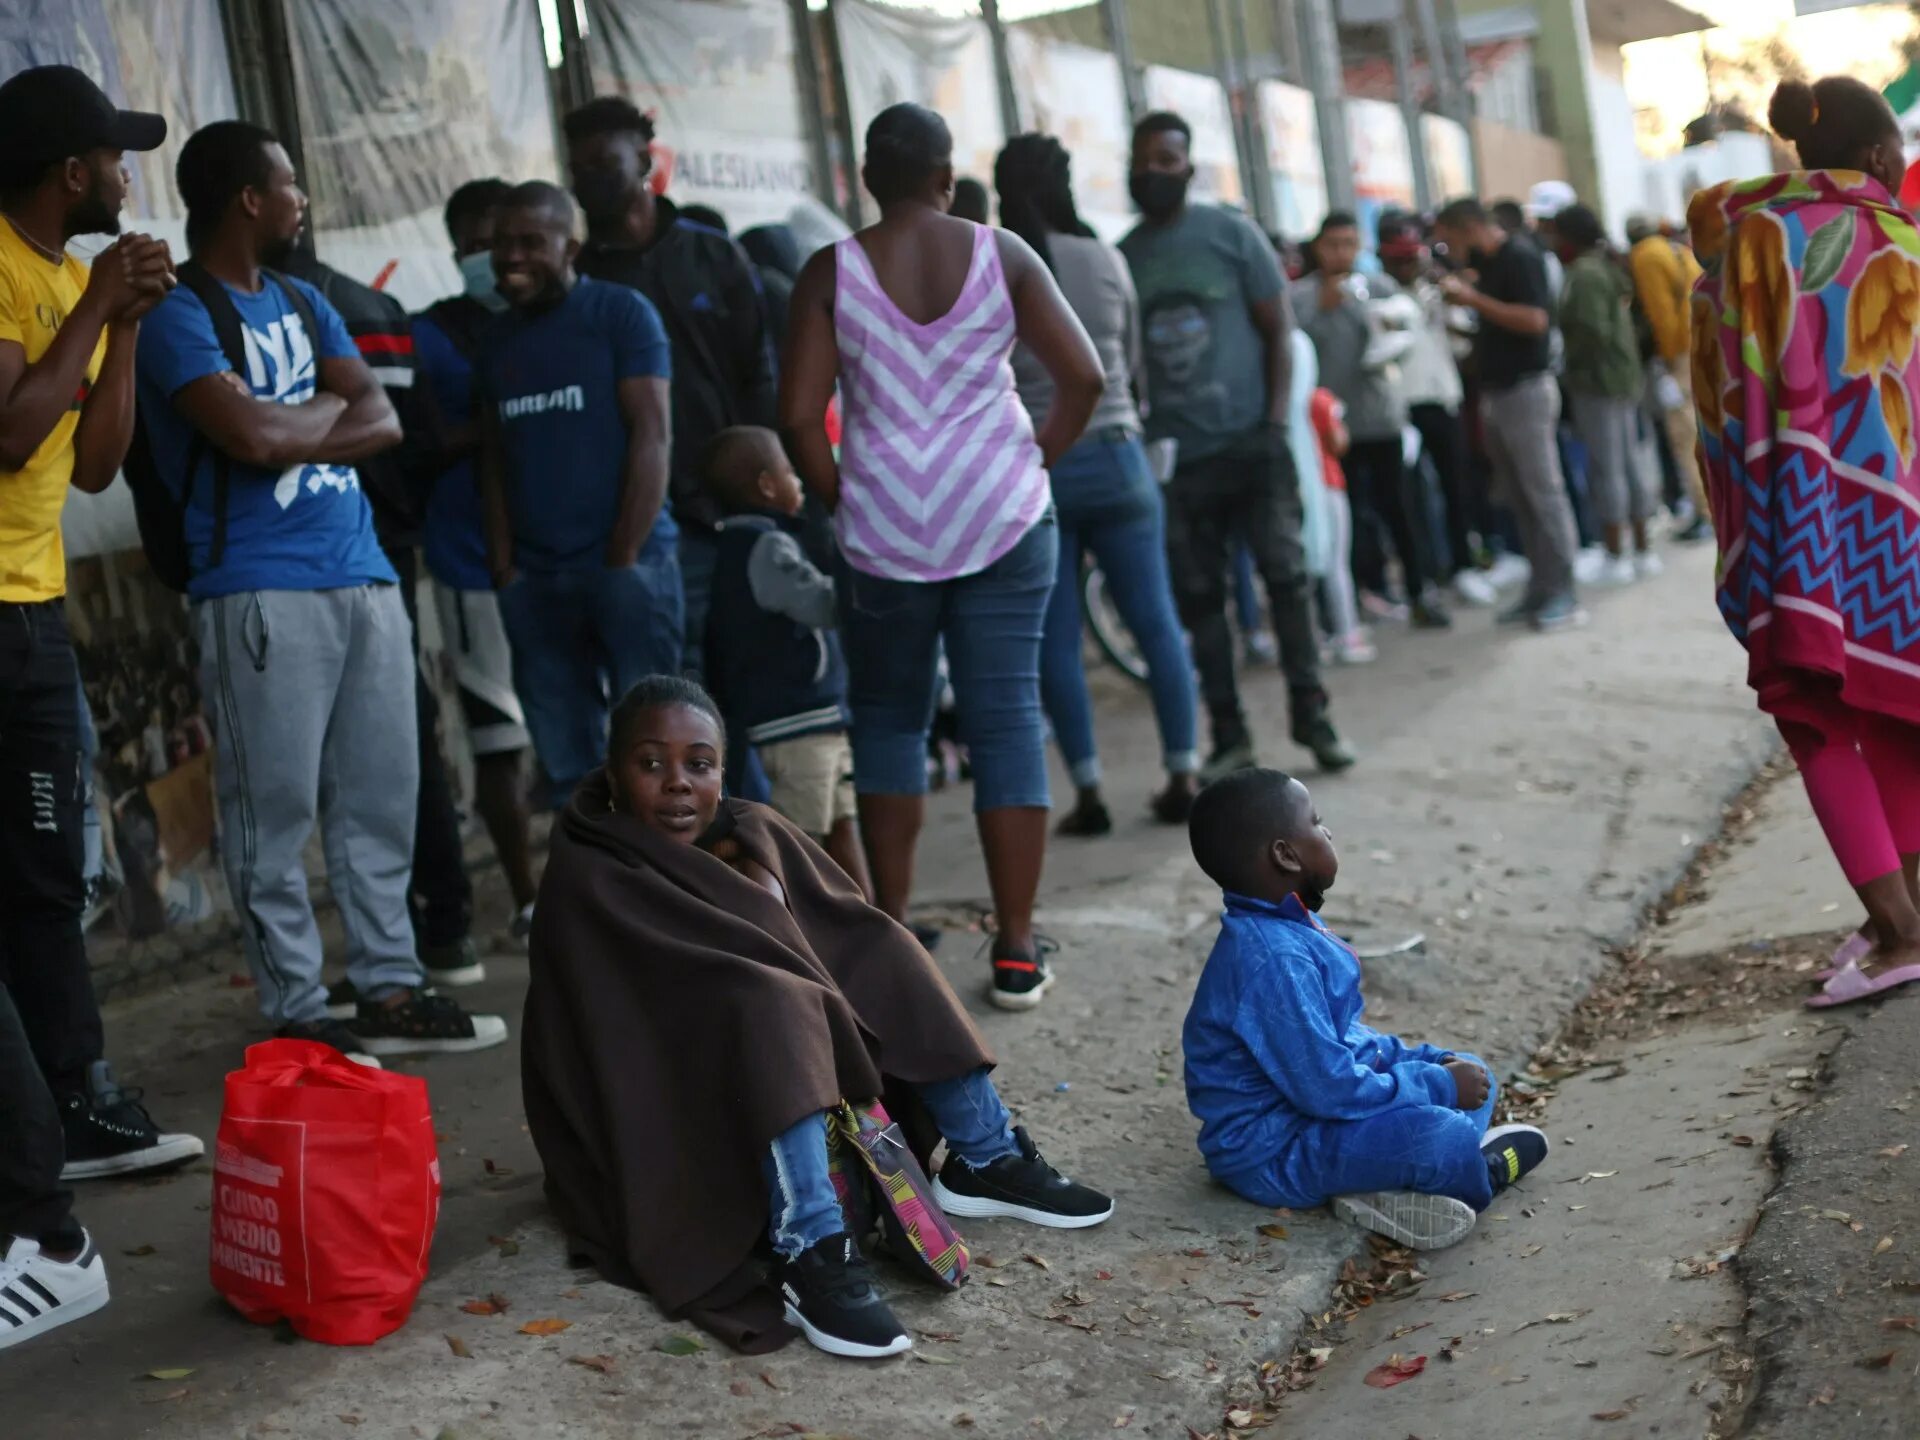 На гаити едят людей. Гаити мигранты. Детская проституция на Гаити. Миграция людей кубинцев. Беженцы в Гаити мом.